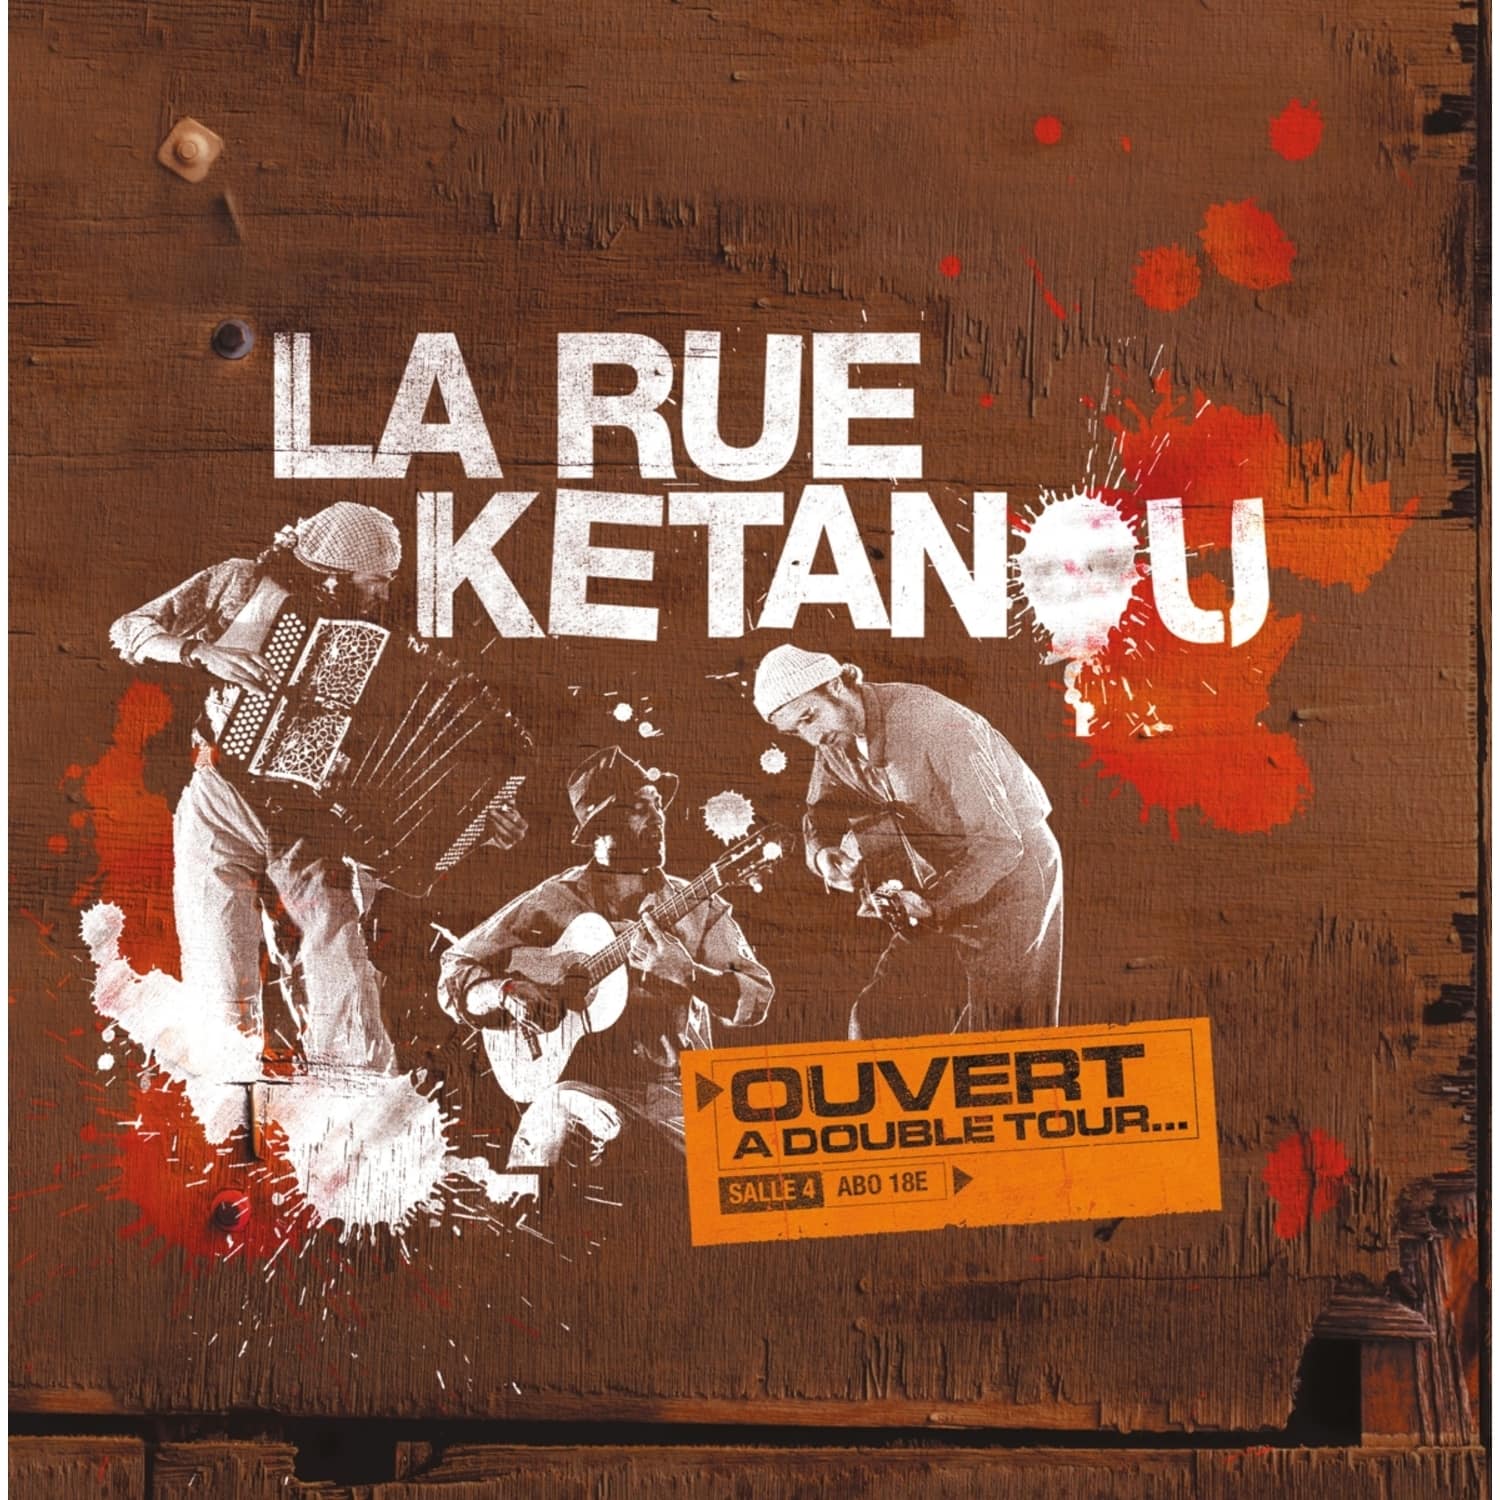 La Rue Ketanou - OUVERT A DOUBLE TOUR 